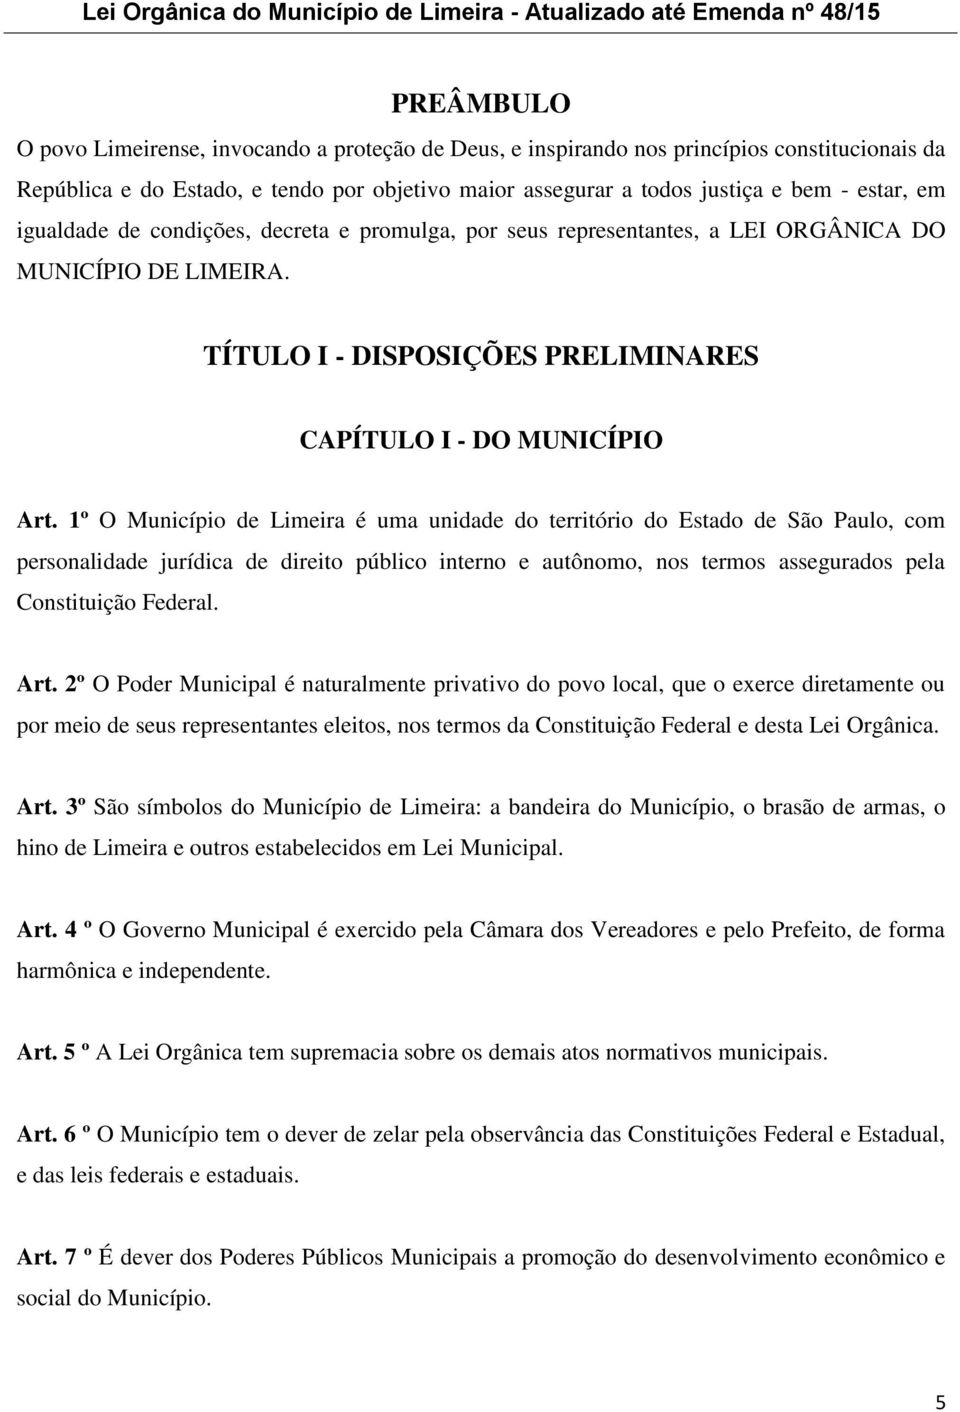 1º O Município de Limeira é uma unidade do território do Estado de São Paulo, com personalidade jurídica de direito público interno e autônomo, nos termos assegurados pela Constituição Federal. Art.